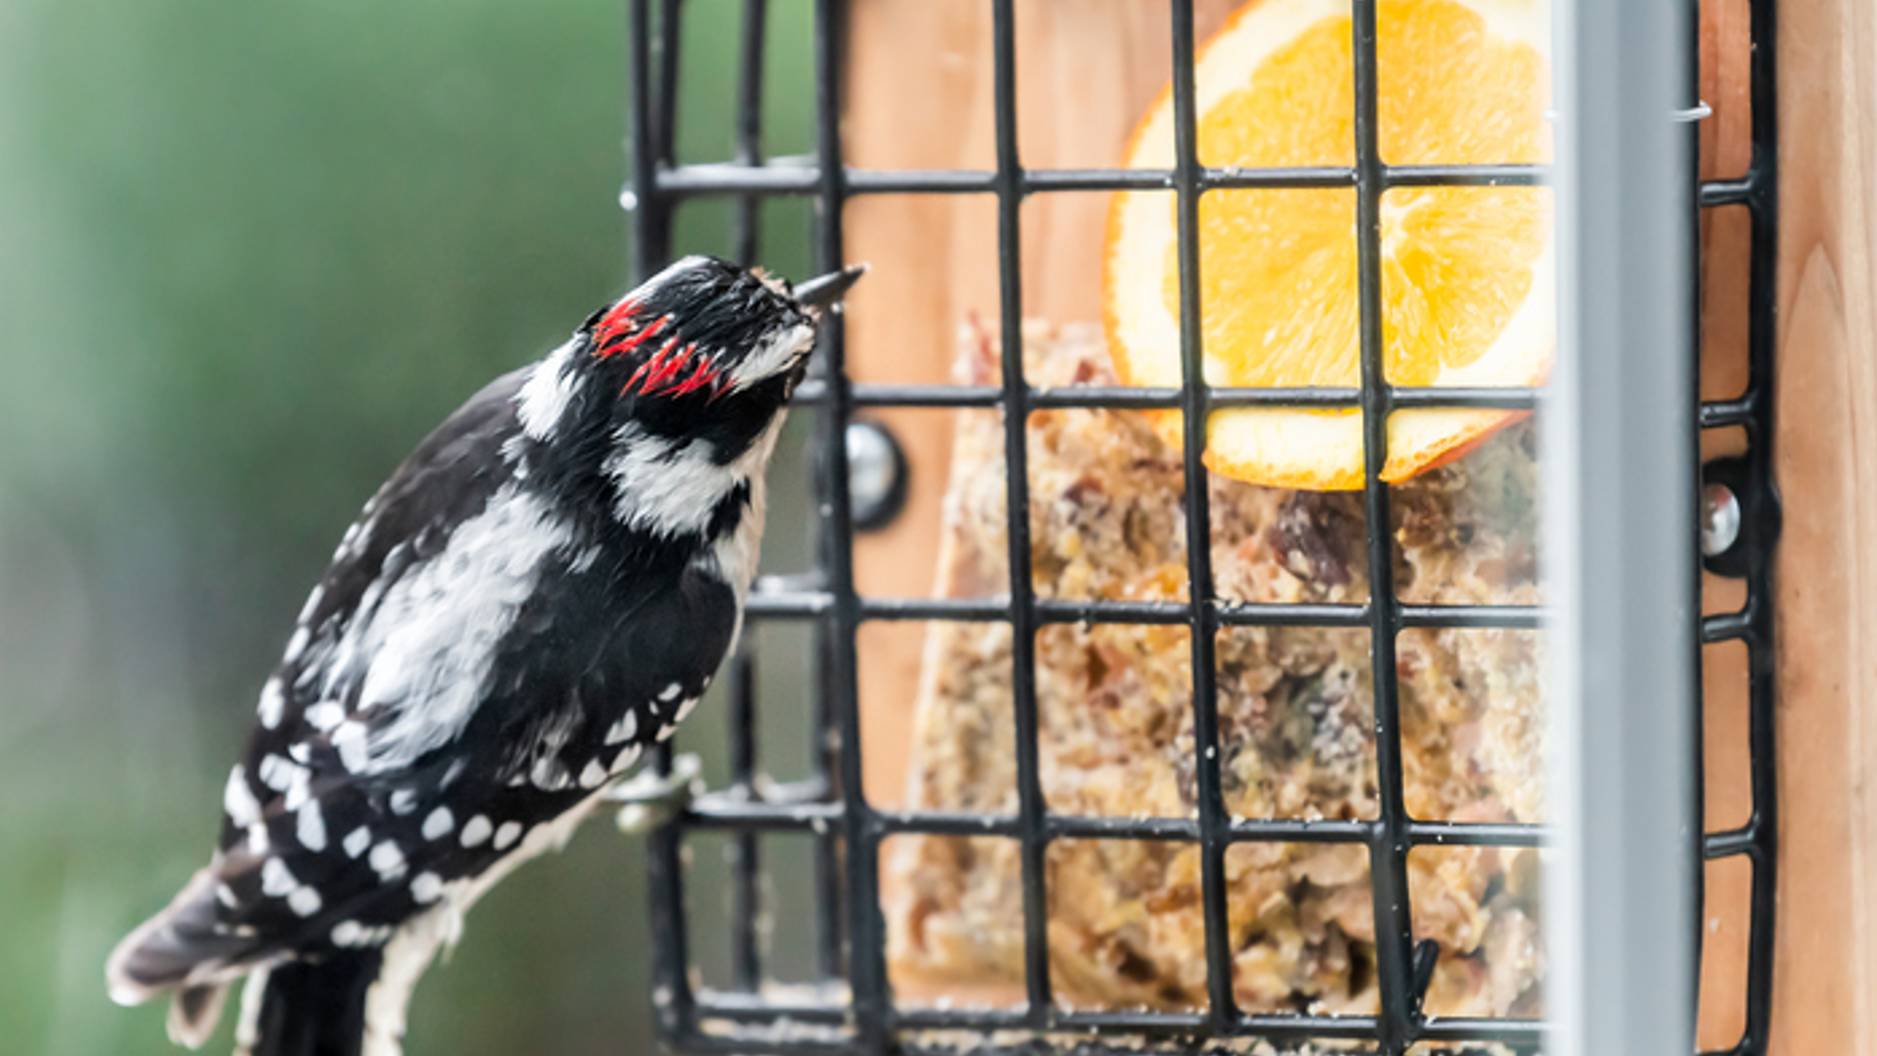 How to hang a bird feeder –